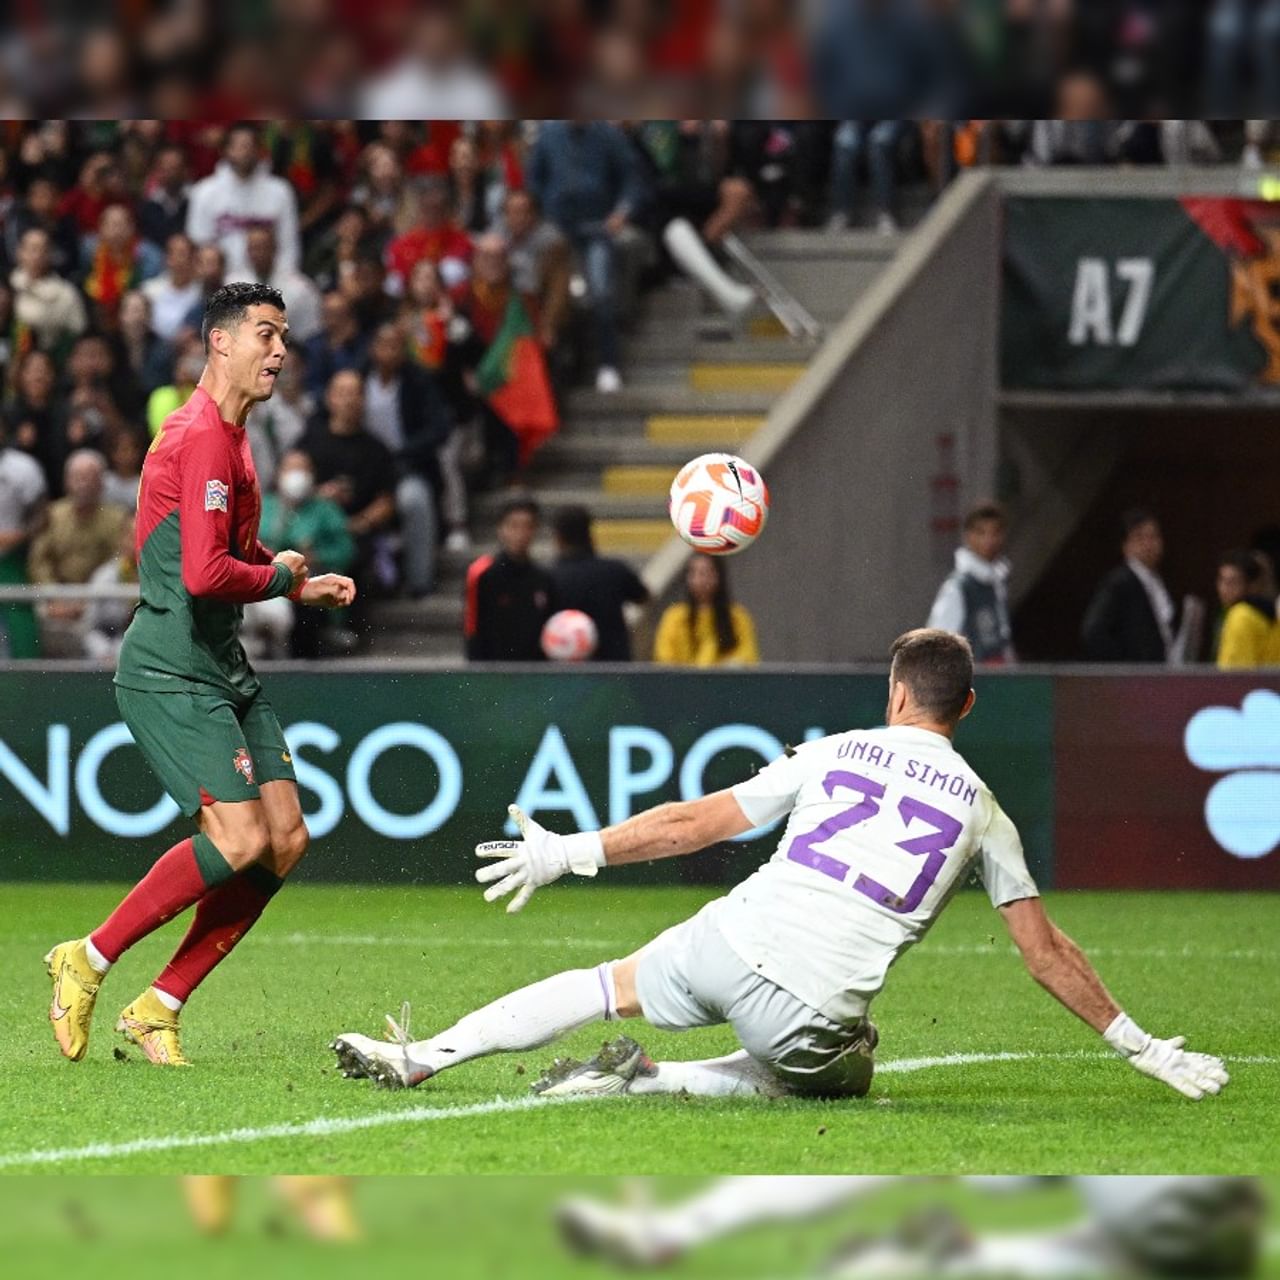 ড্র করলেই সেমিফাইনাল নিশ্চিত হয়ে যেত পর্তুগালের (Portugal)। সুযোগ নষ্টের খেসারত দিতে হল ক্রিশ্চিয়ানো রোনাল্ডোদের। মঙ্গলবার রাতে নেশনস লিগে স্পেনের (Spain) কাছে ০-১ গোলে হেরে গিয়েছে পর্তুগাল। (Pic Courtesy-UEFA Nations League Twitter)
